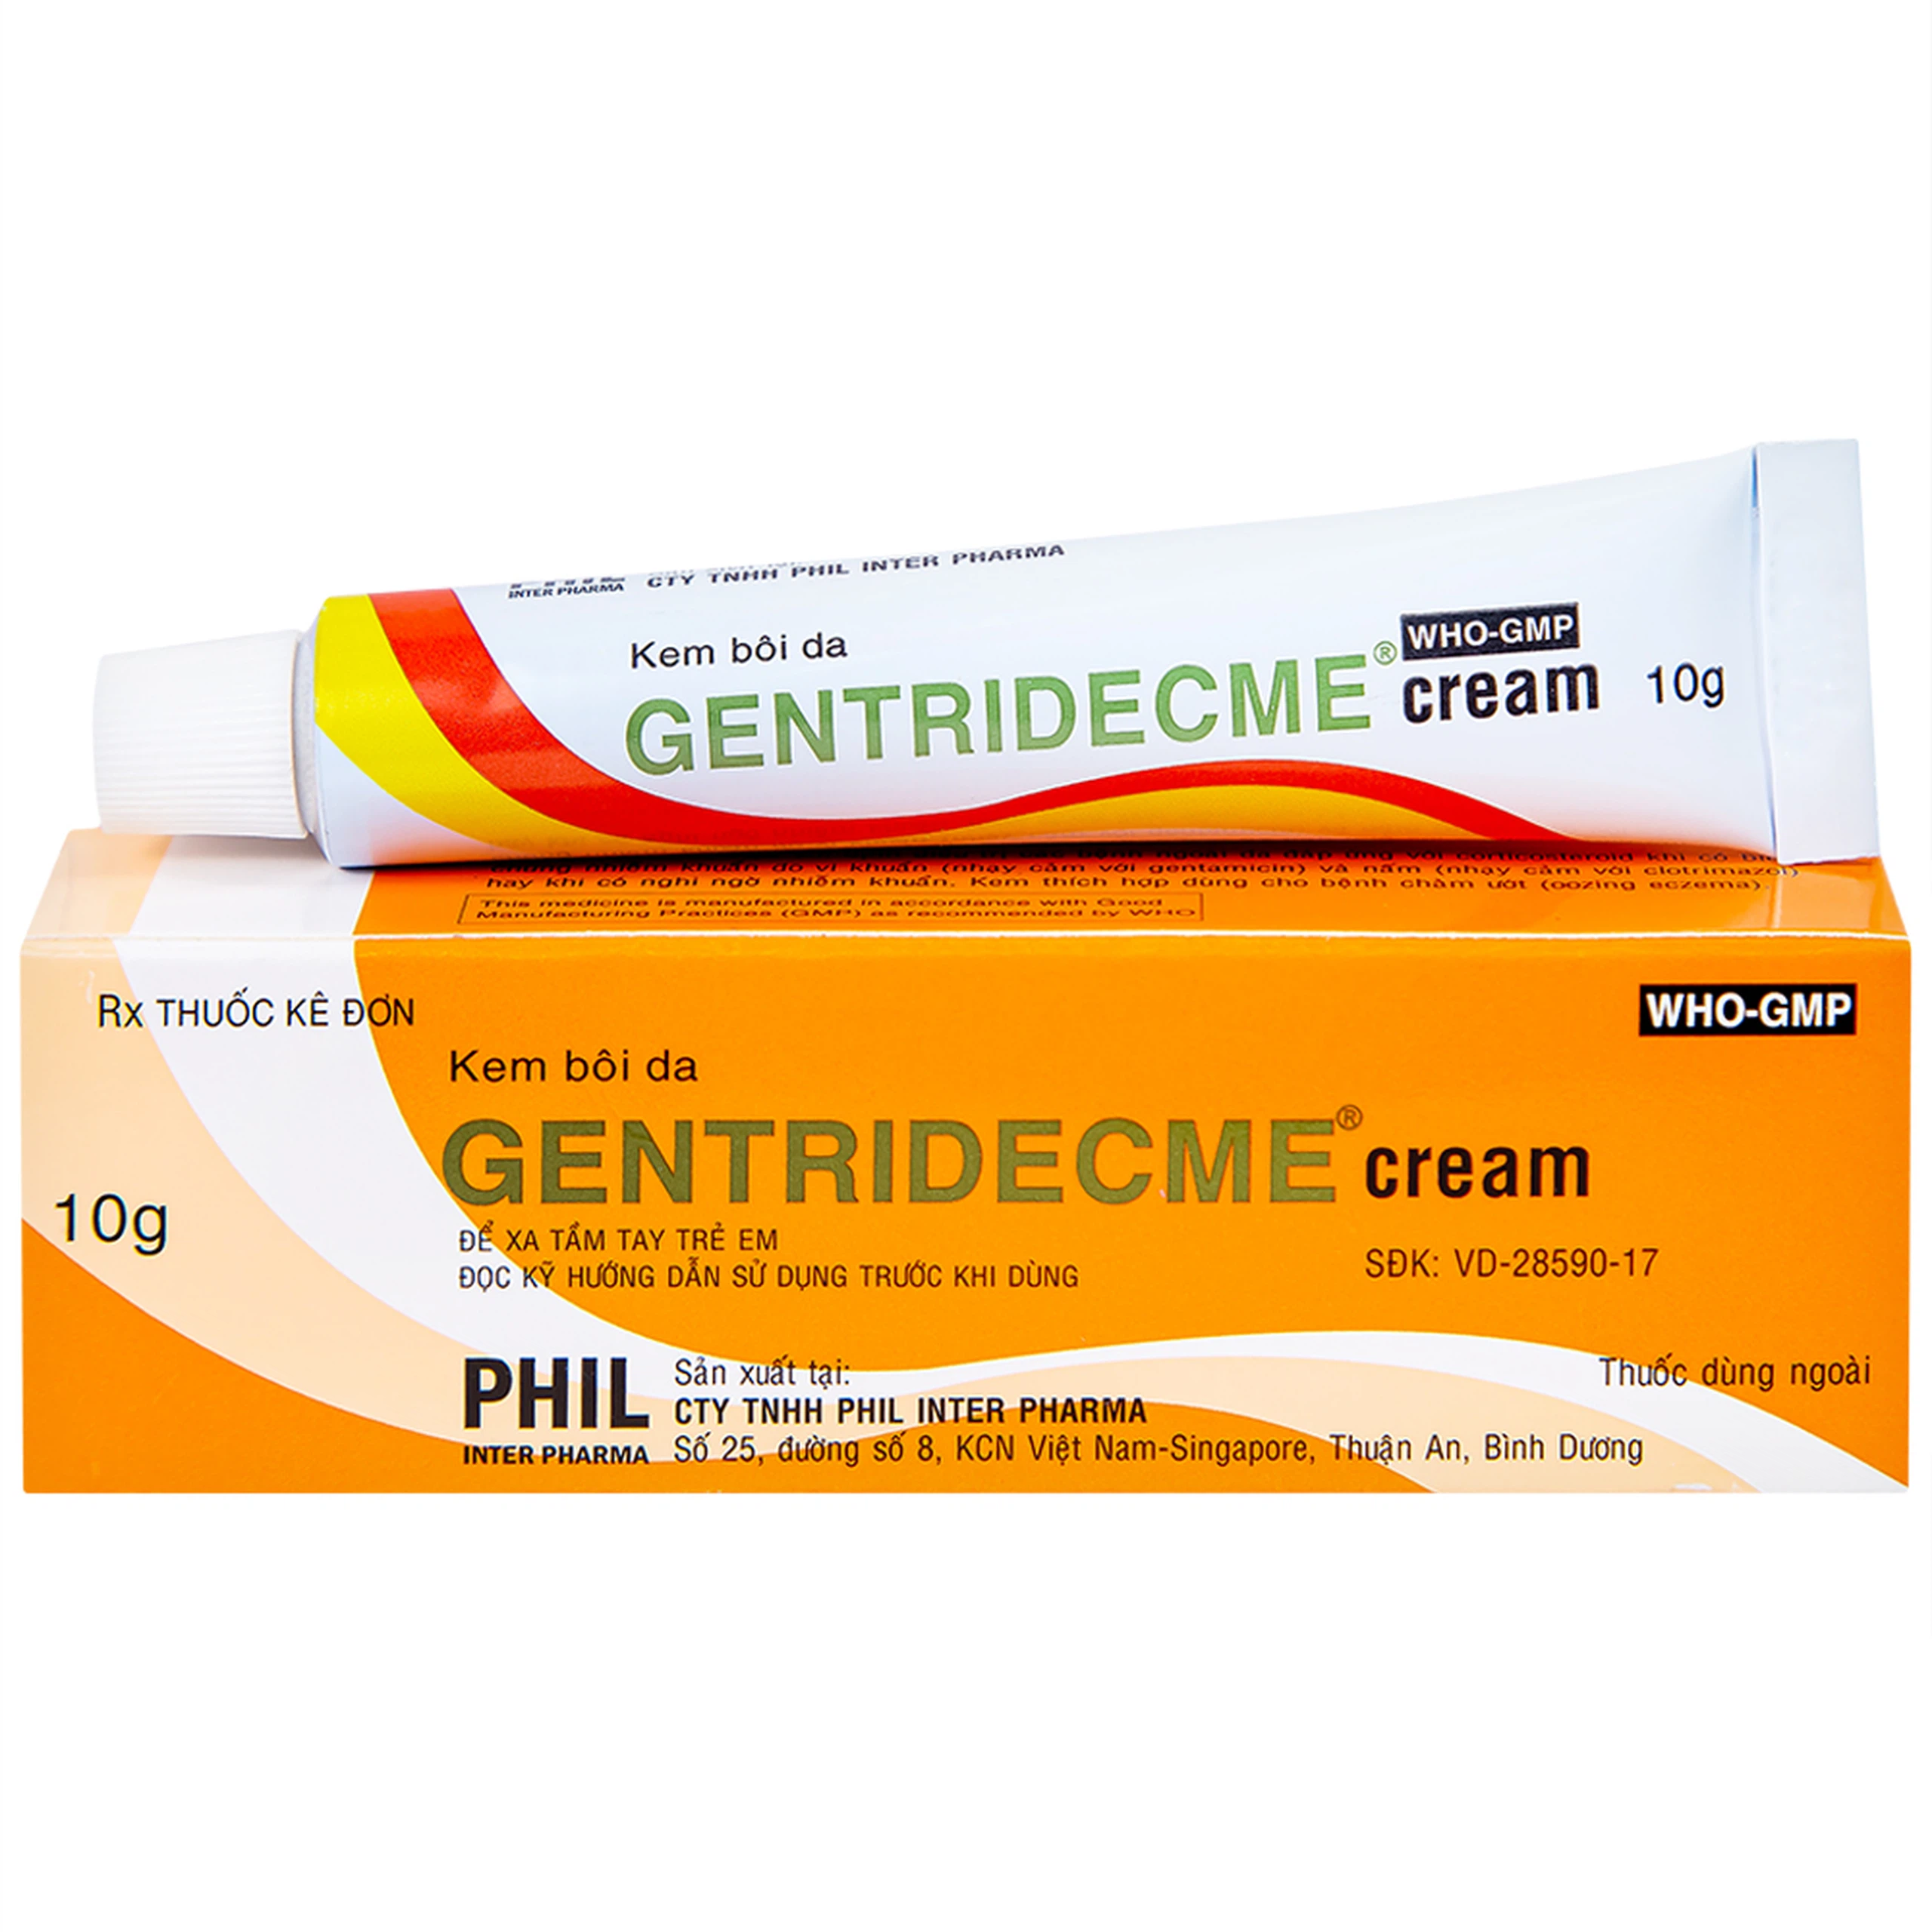 Kem bôi da Gentridecme Cream Phil điều trị nhiễm trùng da, nấm da (10g)